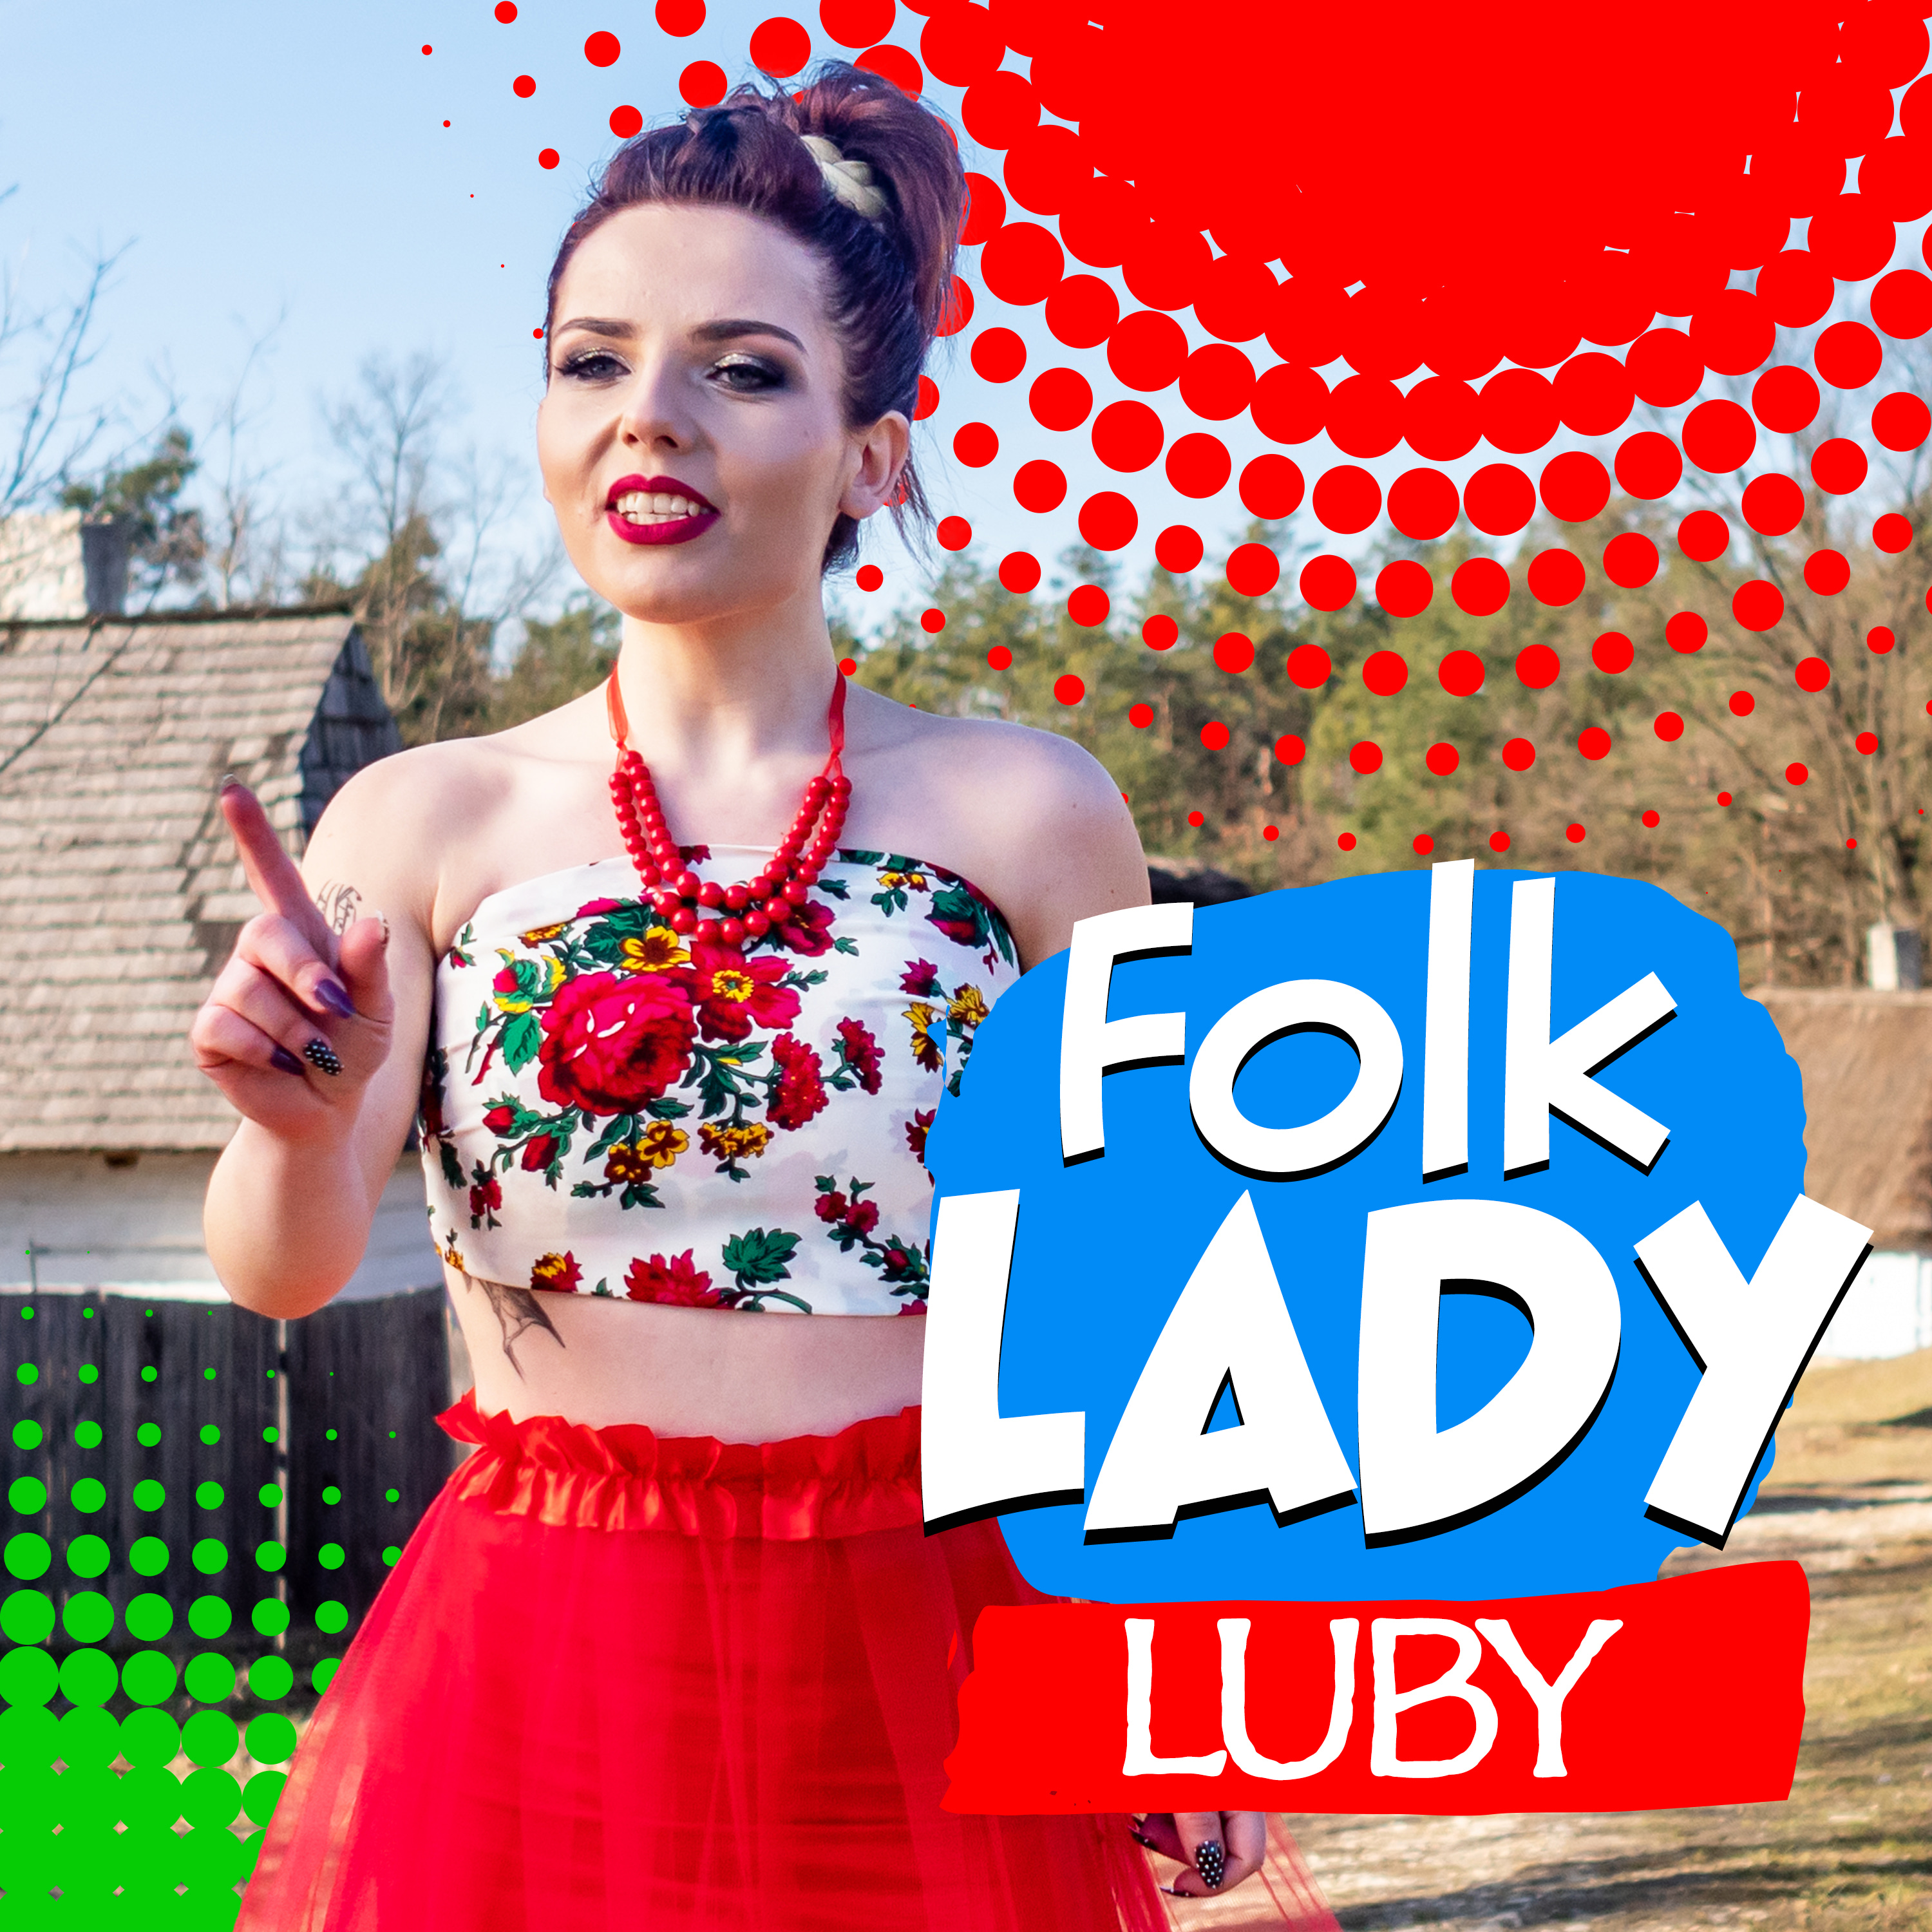 Folk Lady - Luby